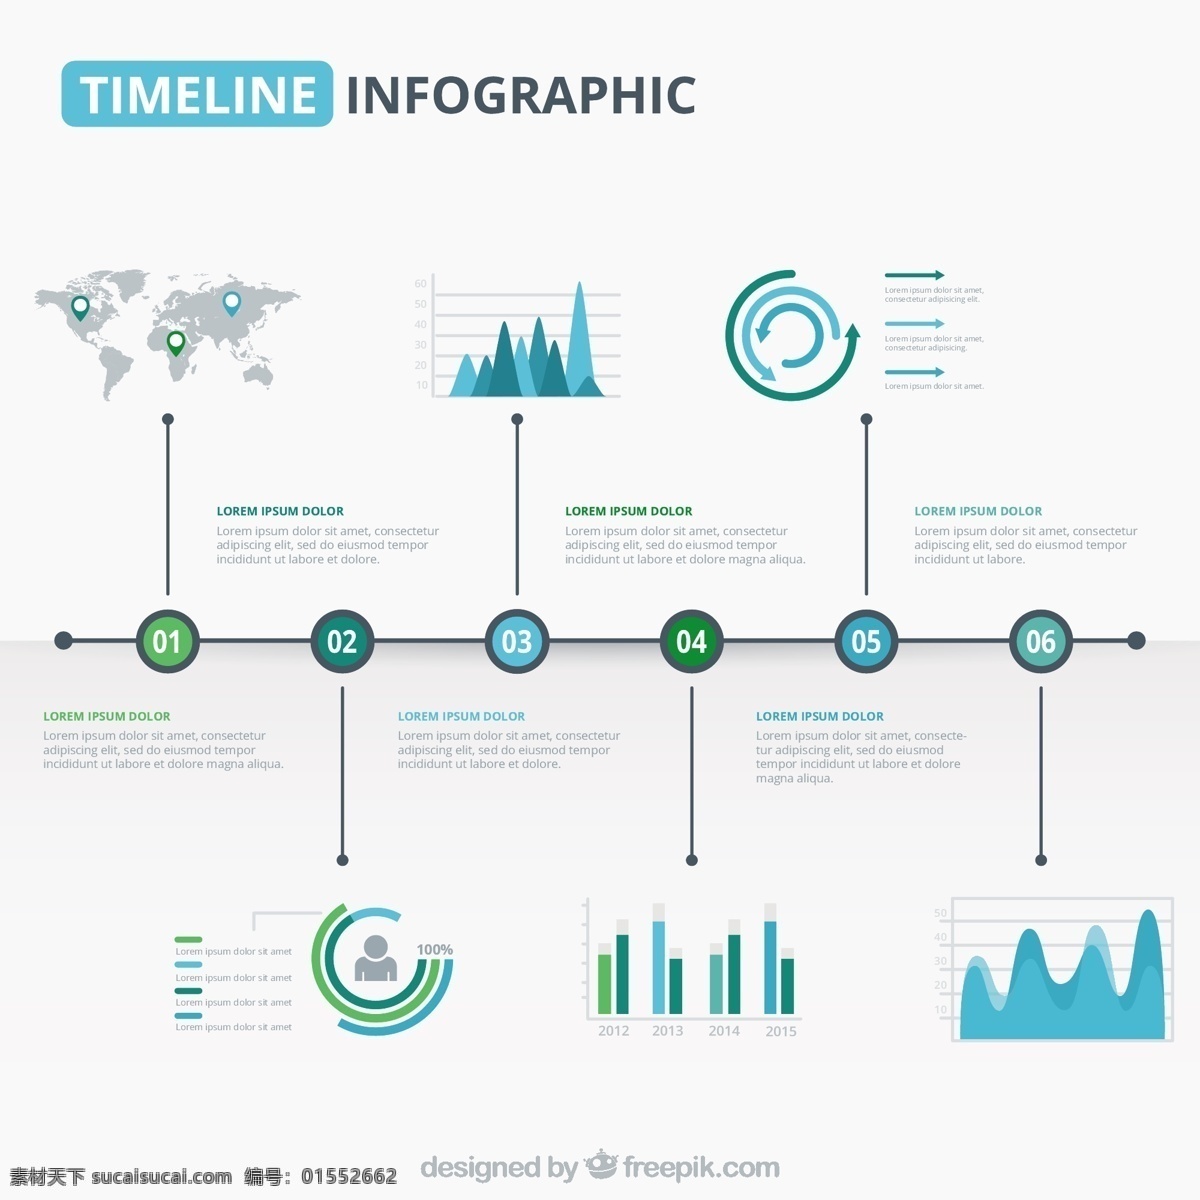 蓝色 绿色 色调 现代 时间 线 图形 图表 商务 时间表 酒吧 图 信息 过程 数据 要素 信息图表元素 白色